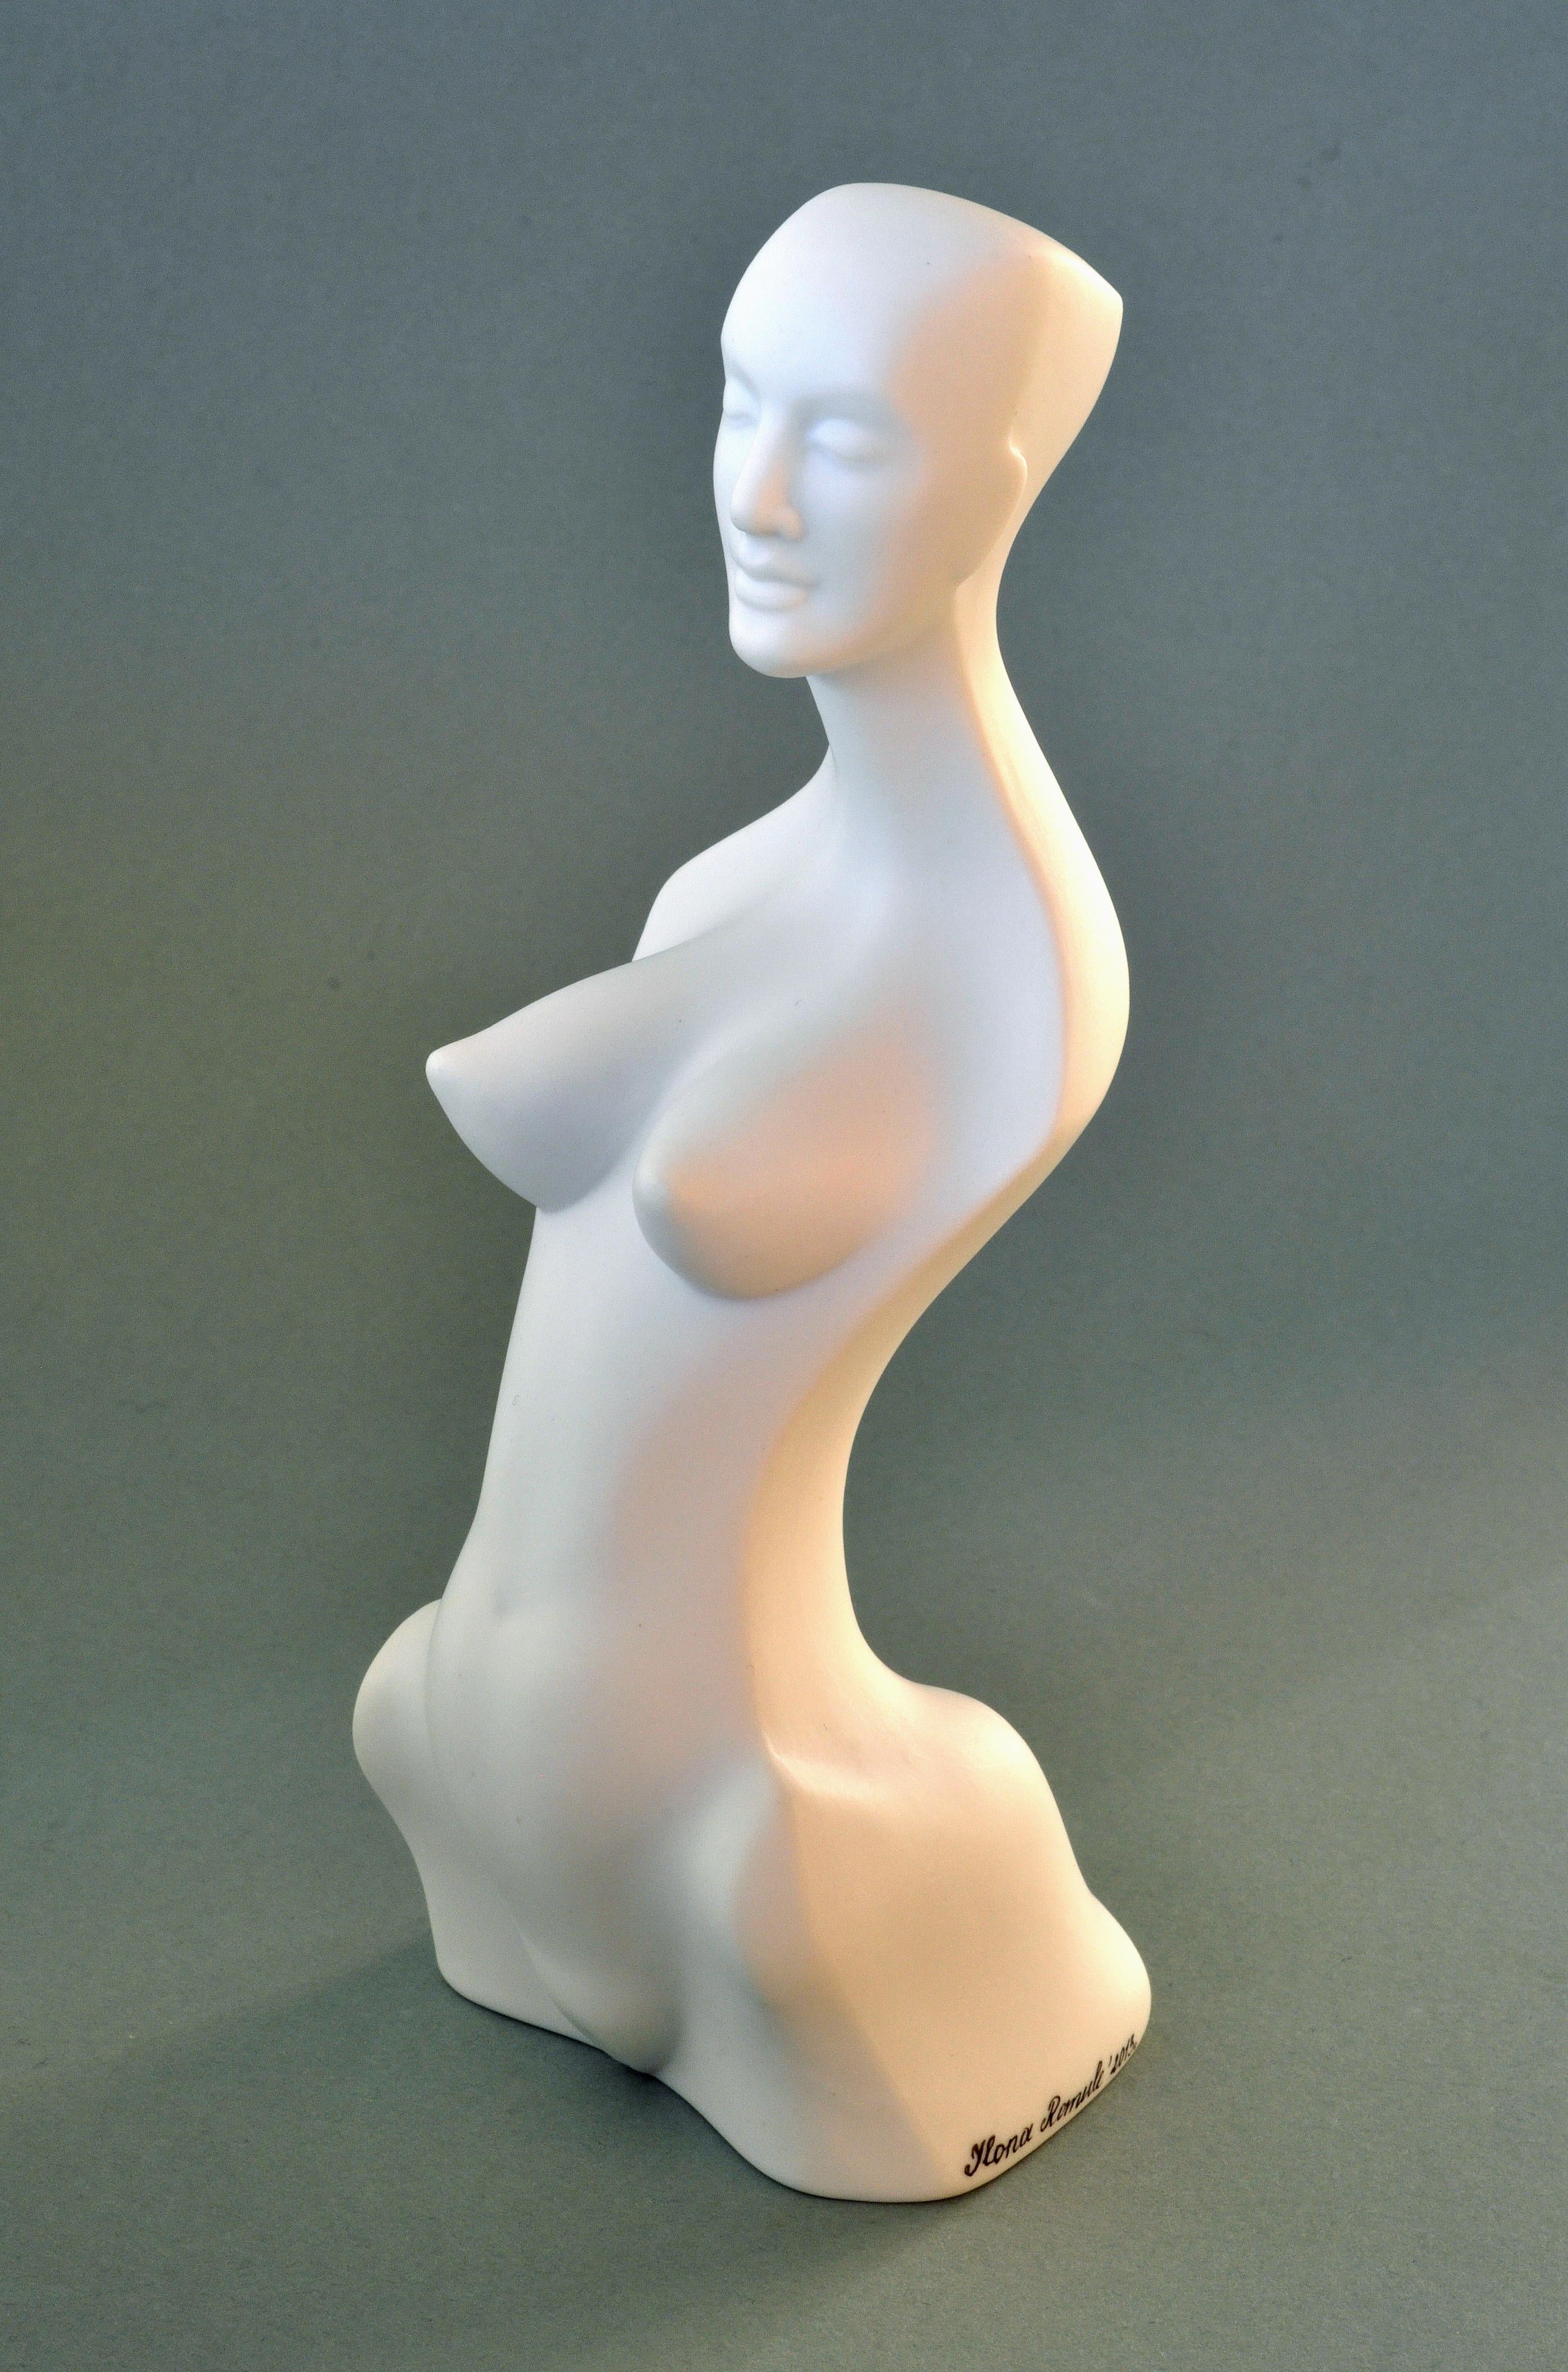 La figure de la femme. I

2013, porcelaine, h 17,5 cm

par Ilona Romule, sculpteur de premier plan en Lettonie

''Women Figure'' en porcelaine est une sculpture de petite taille qui incarne l'élégance et la beauté de la forme féminine. Sa création